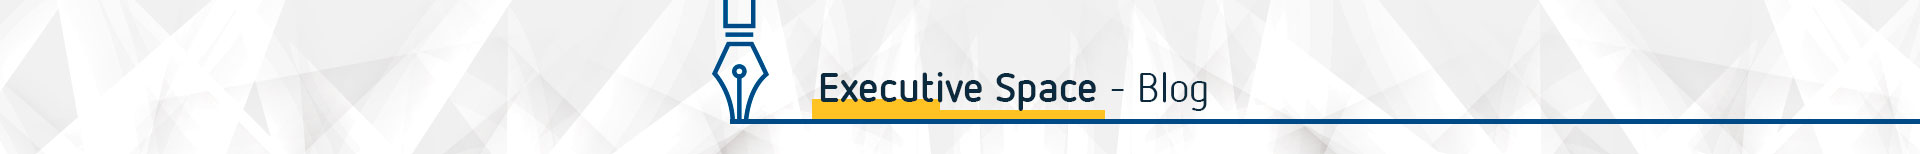 Executive Space - Blog